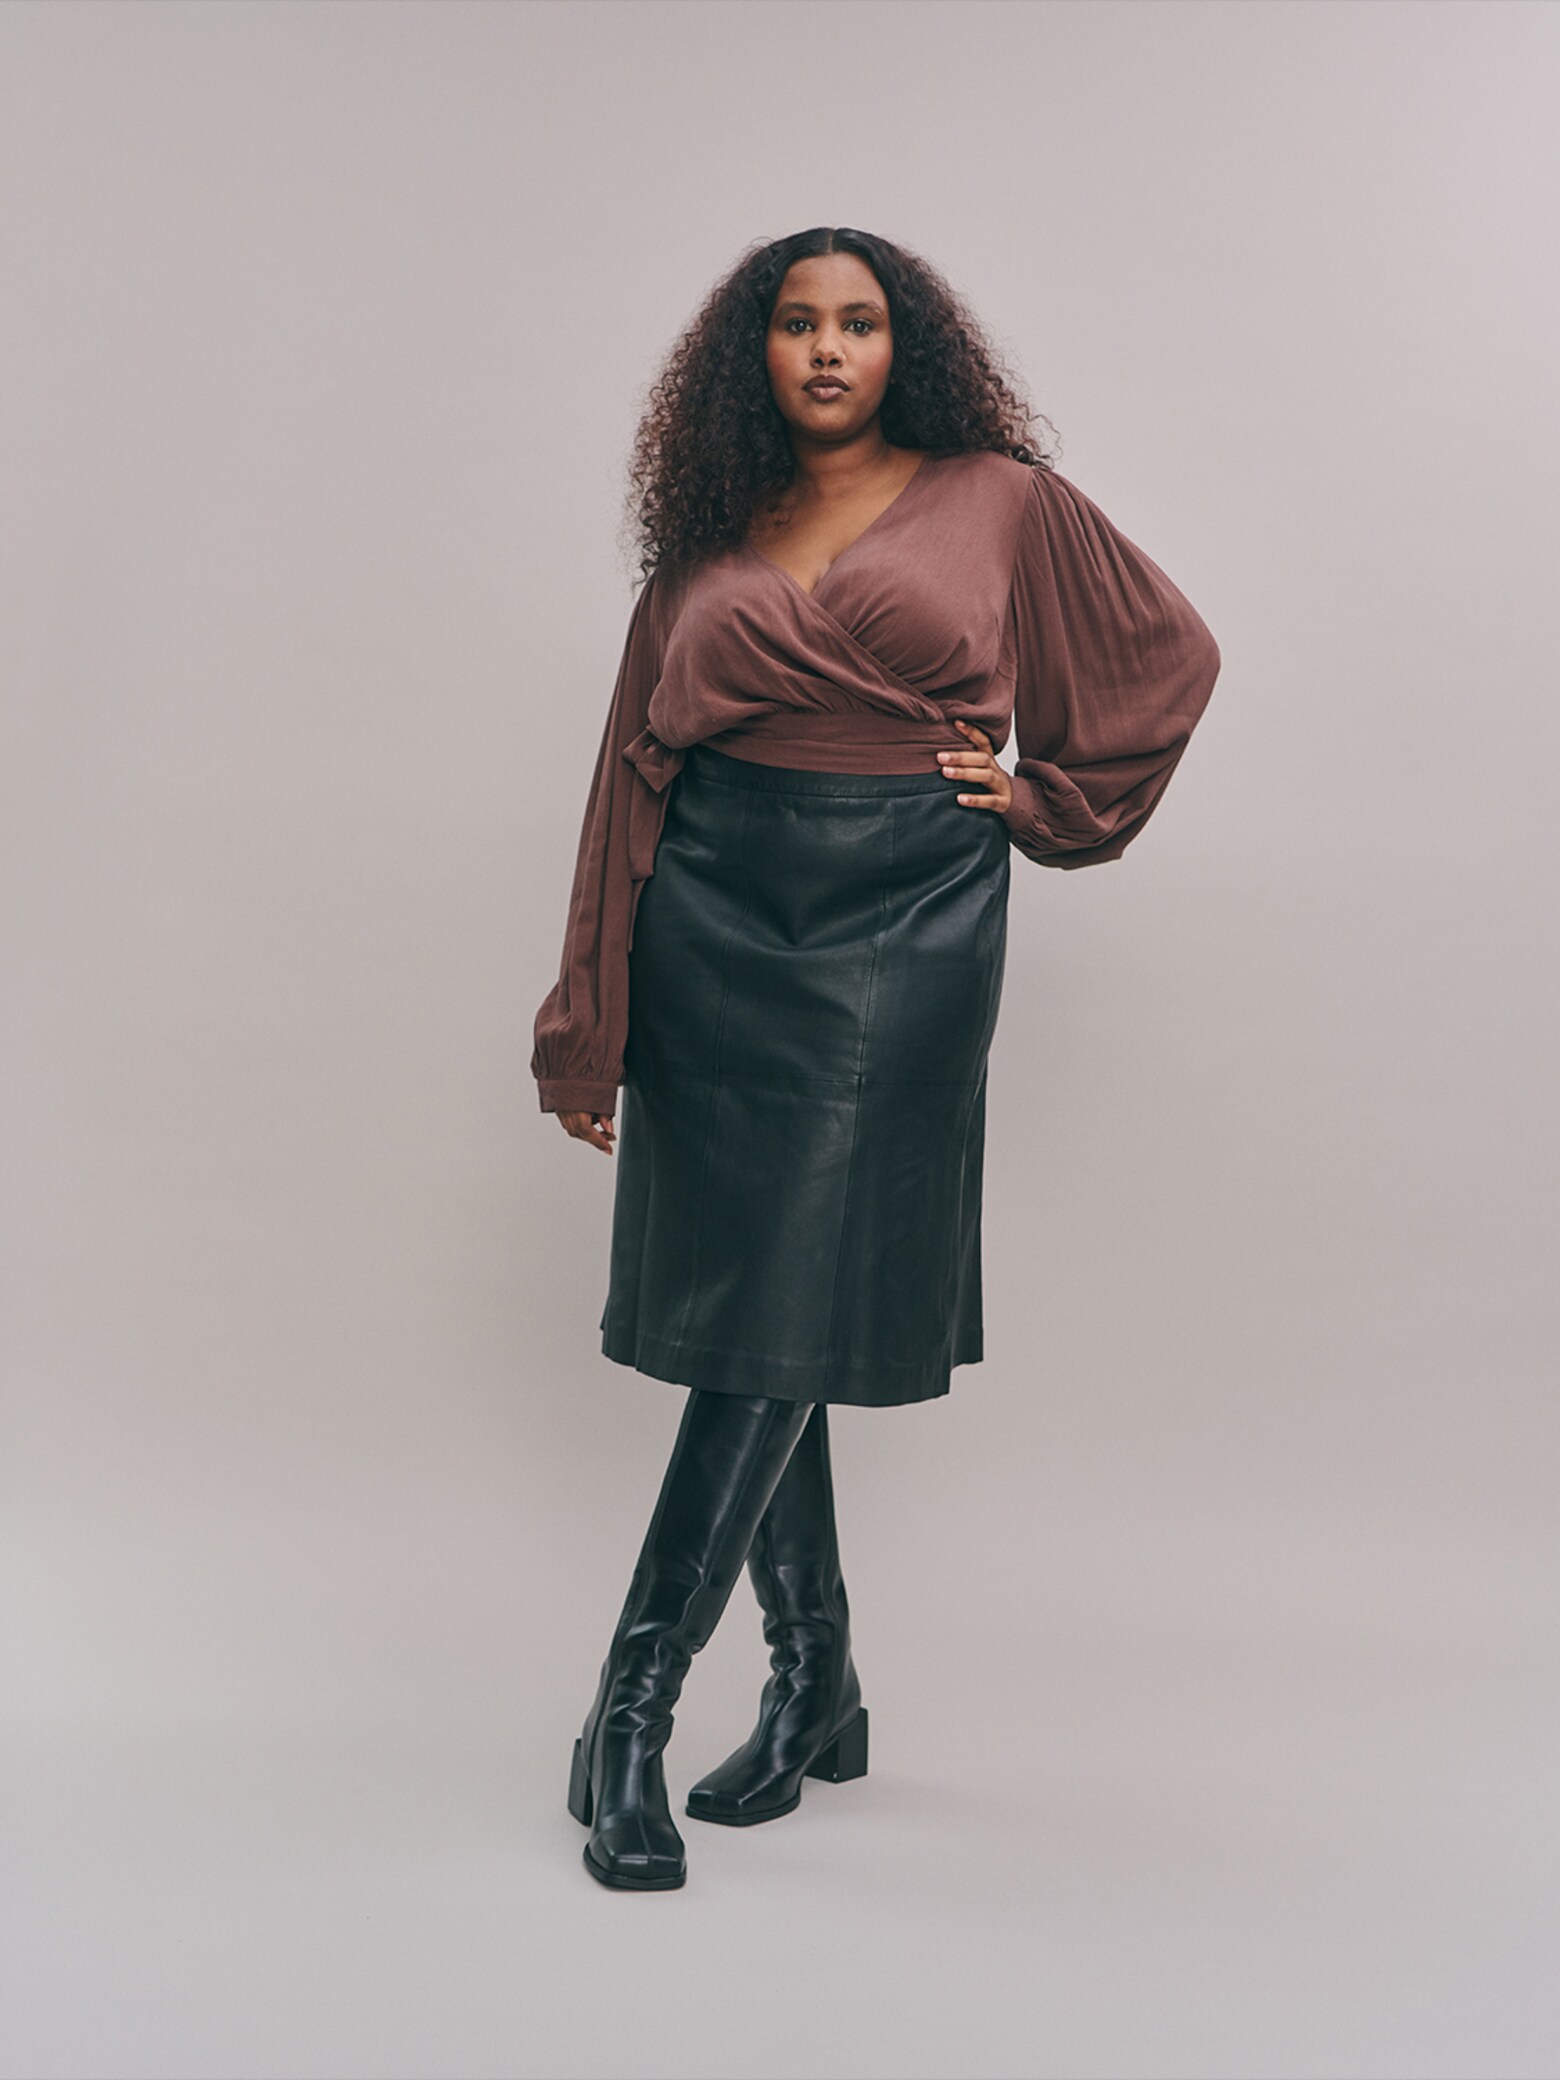 Saara - Brown & Black Leathery Chic Look